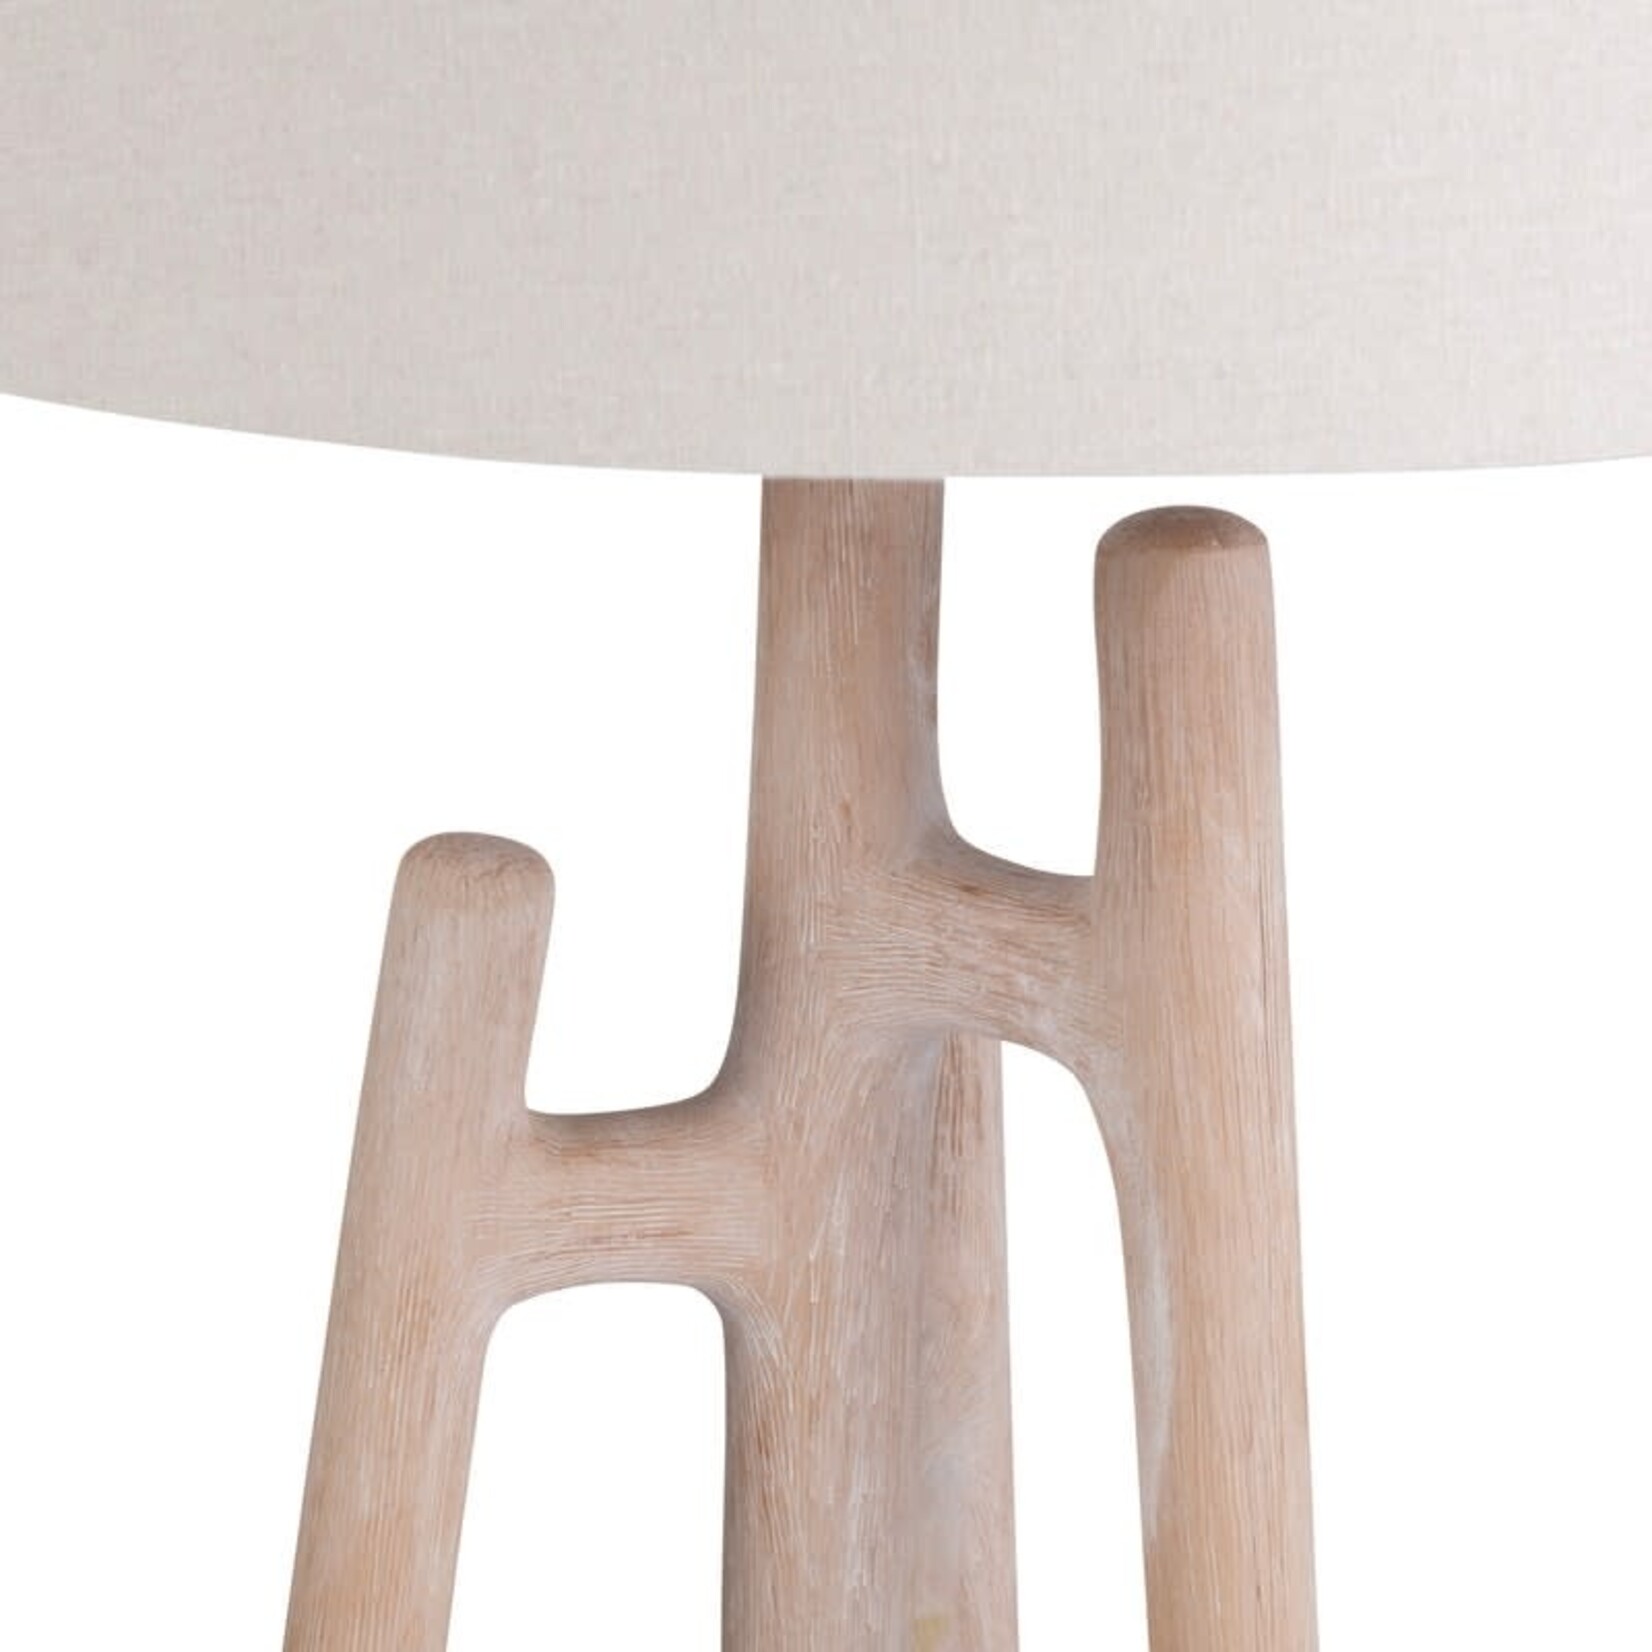 Crestview 32.5" Table Lamp (FW)